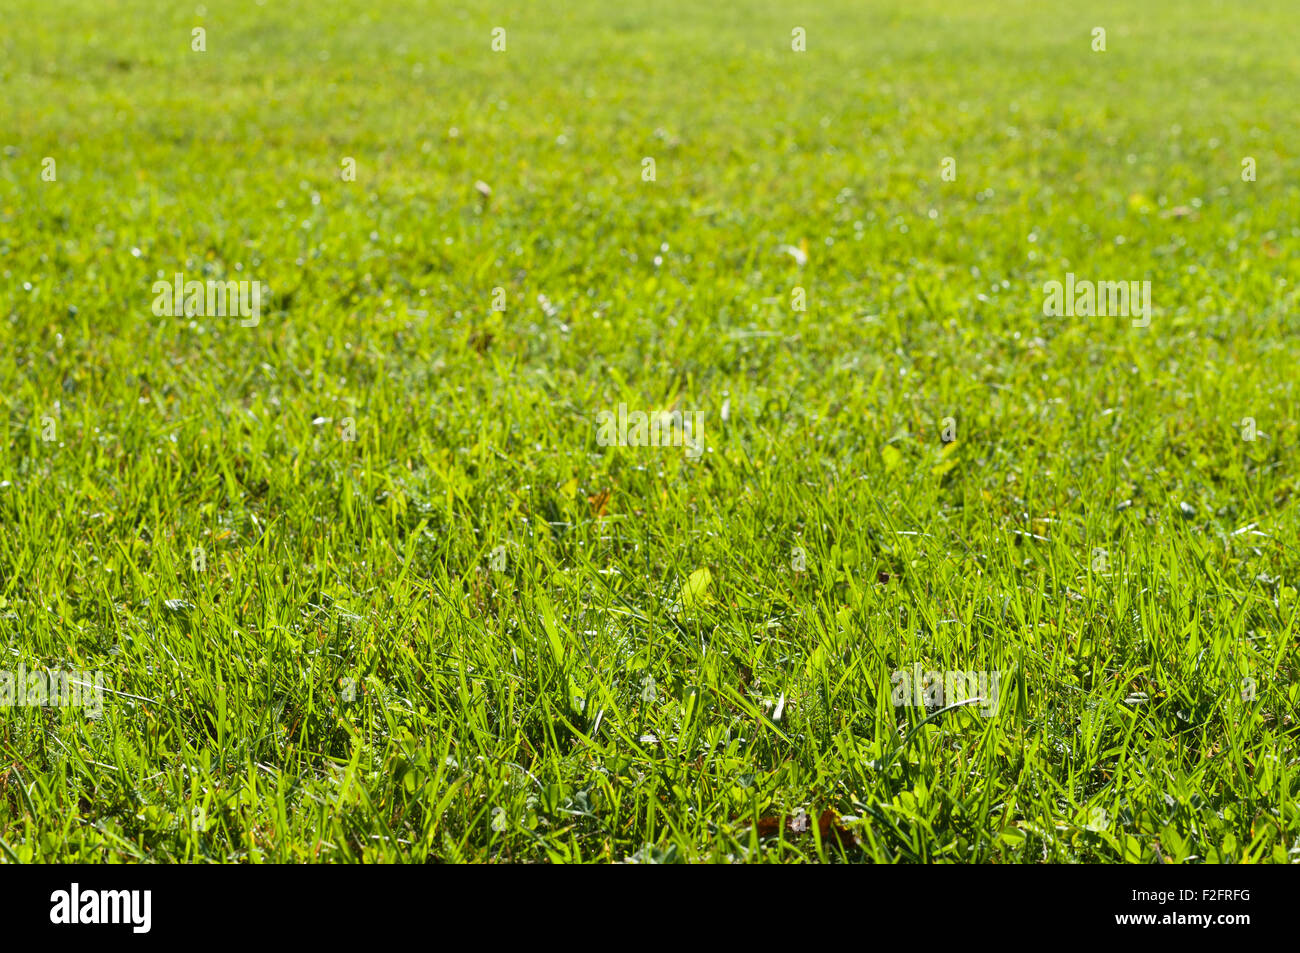 Green grass lawn under sunlight Stock Photo